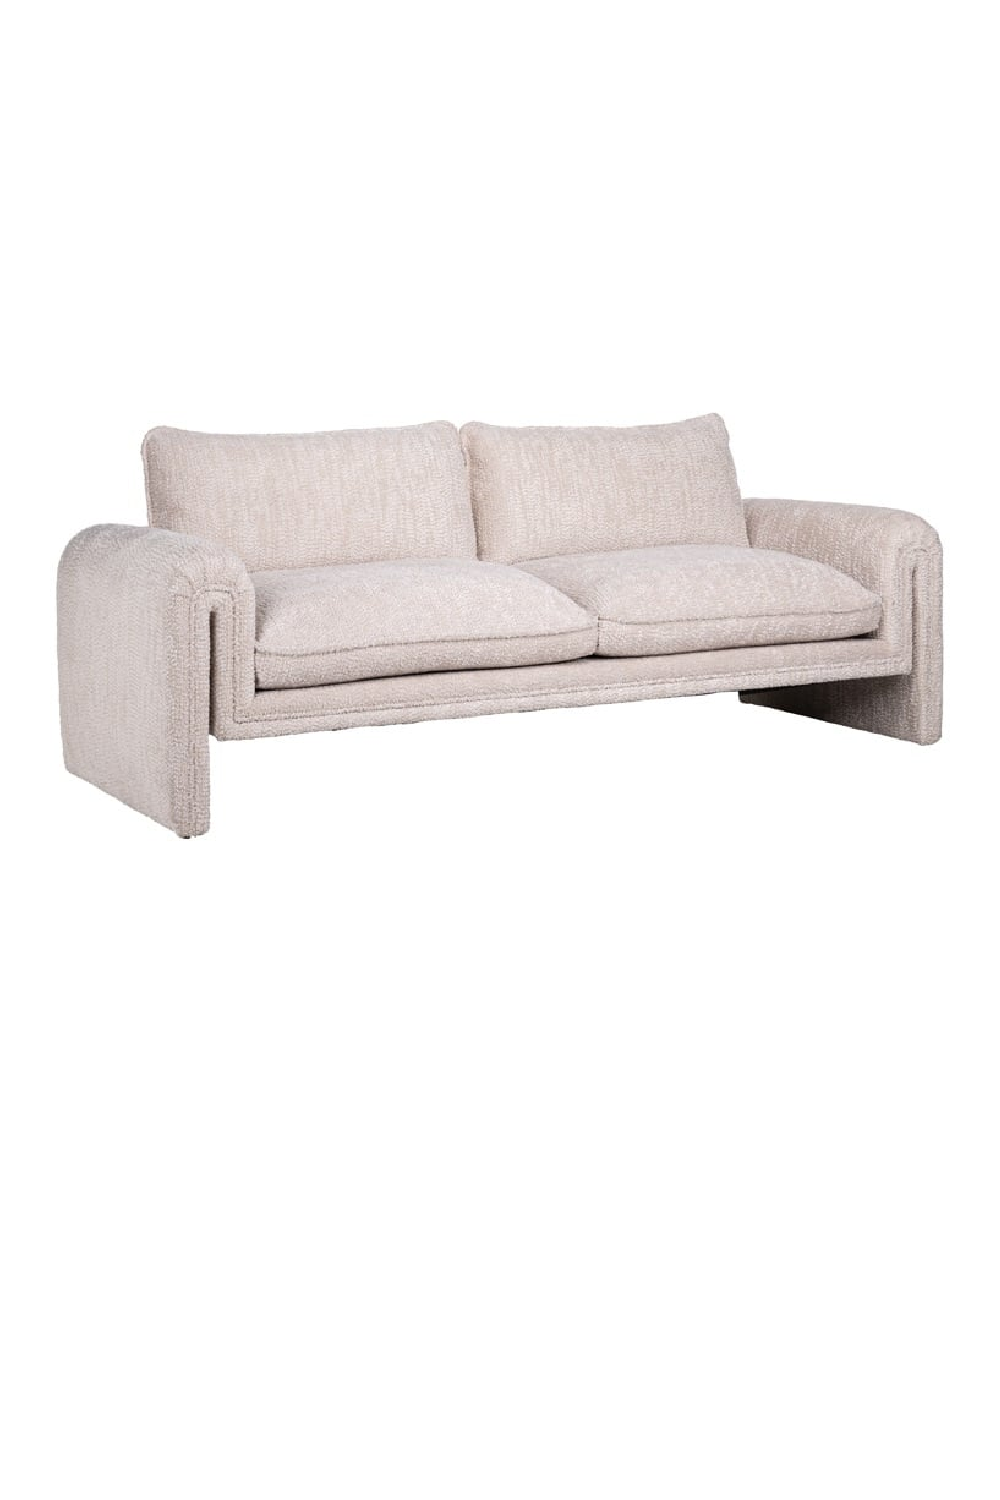 Modern Minimalist Sofa | OROA Sandro | Oroa.com